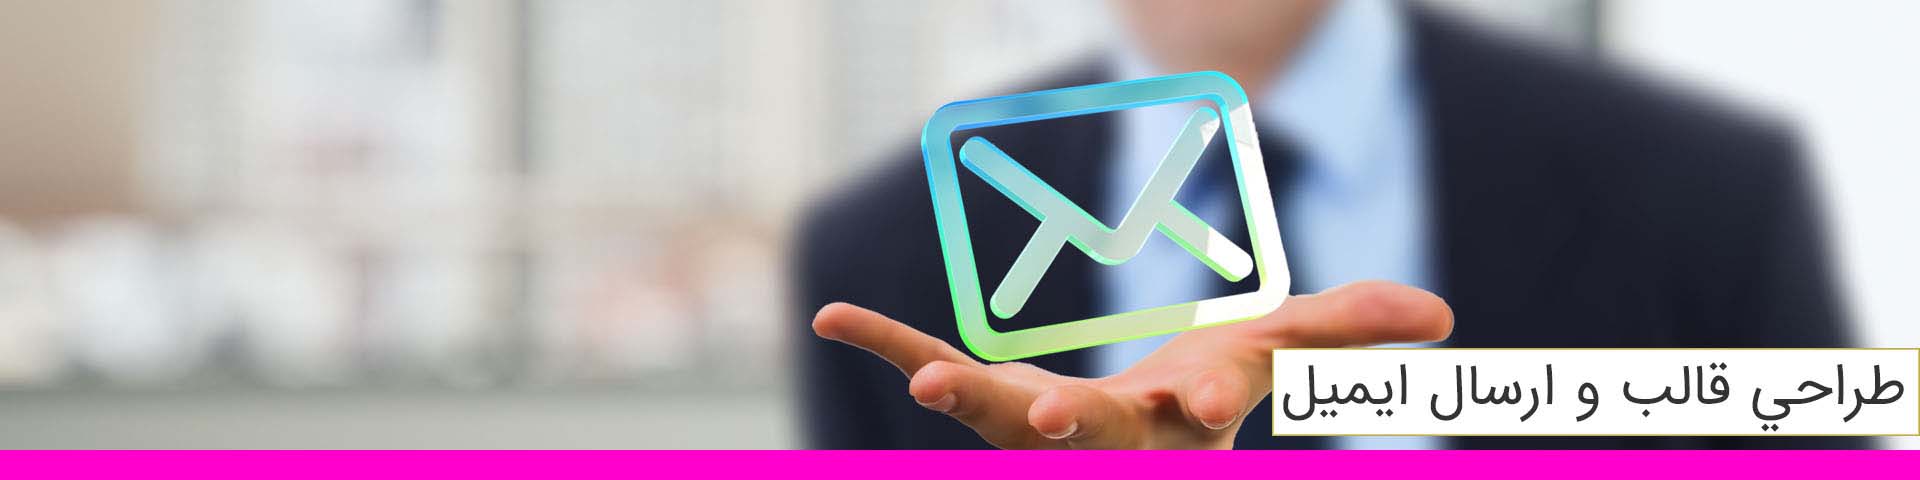 طراحی قالب و ارسال ایمیل